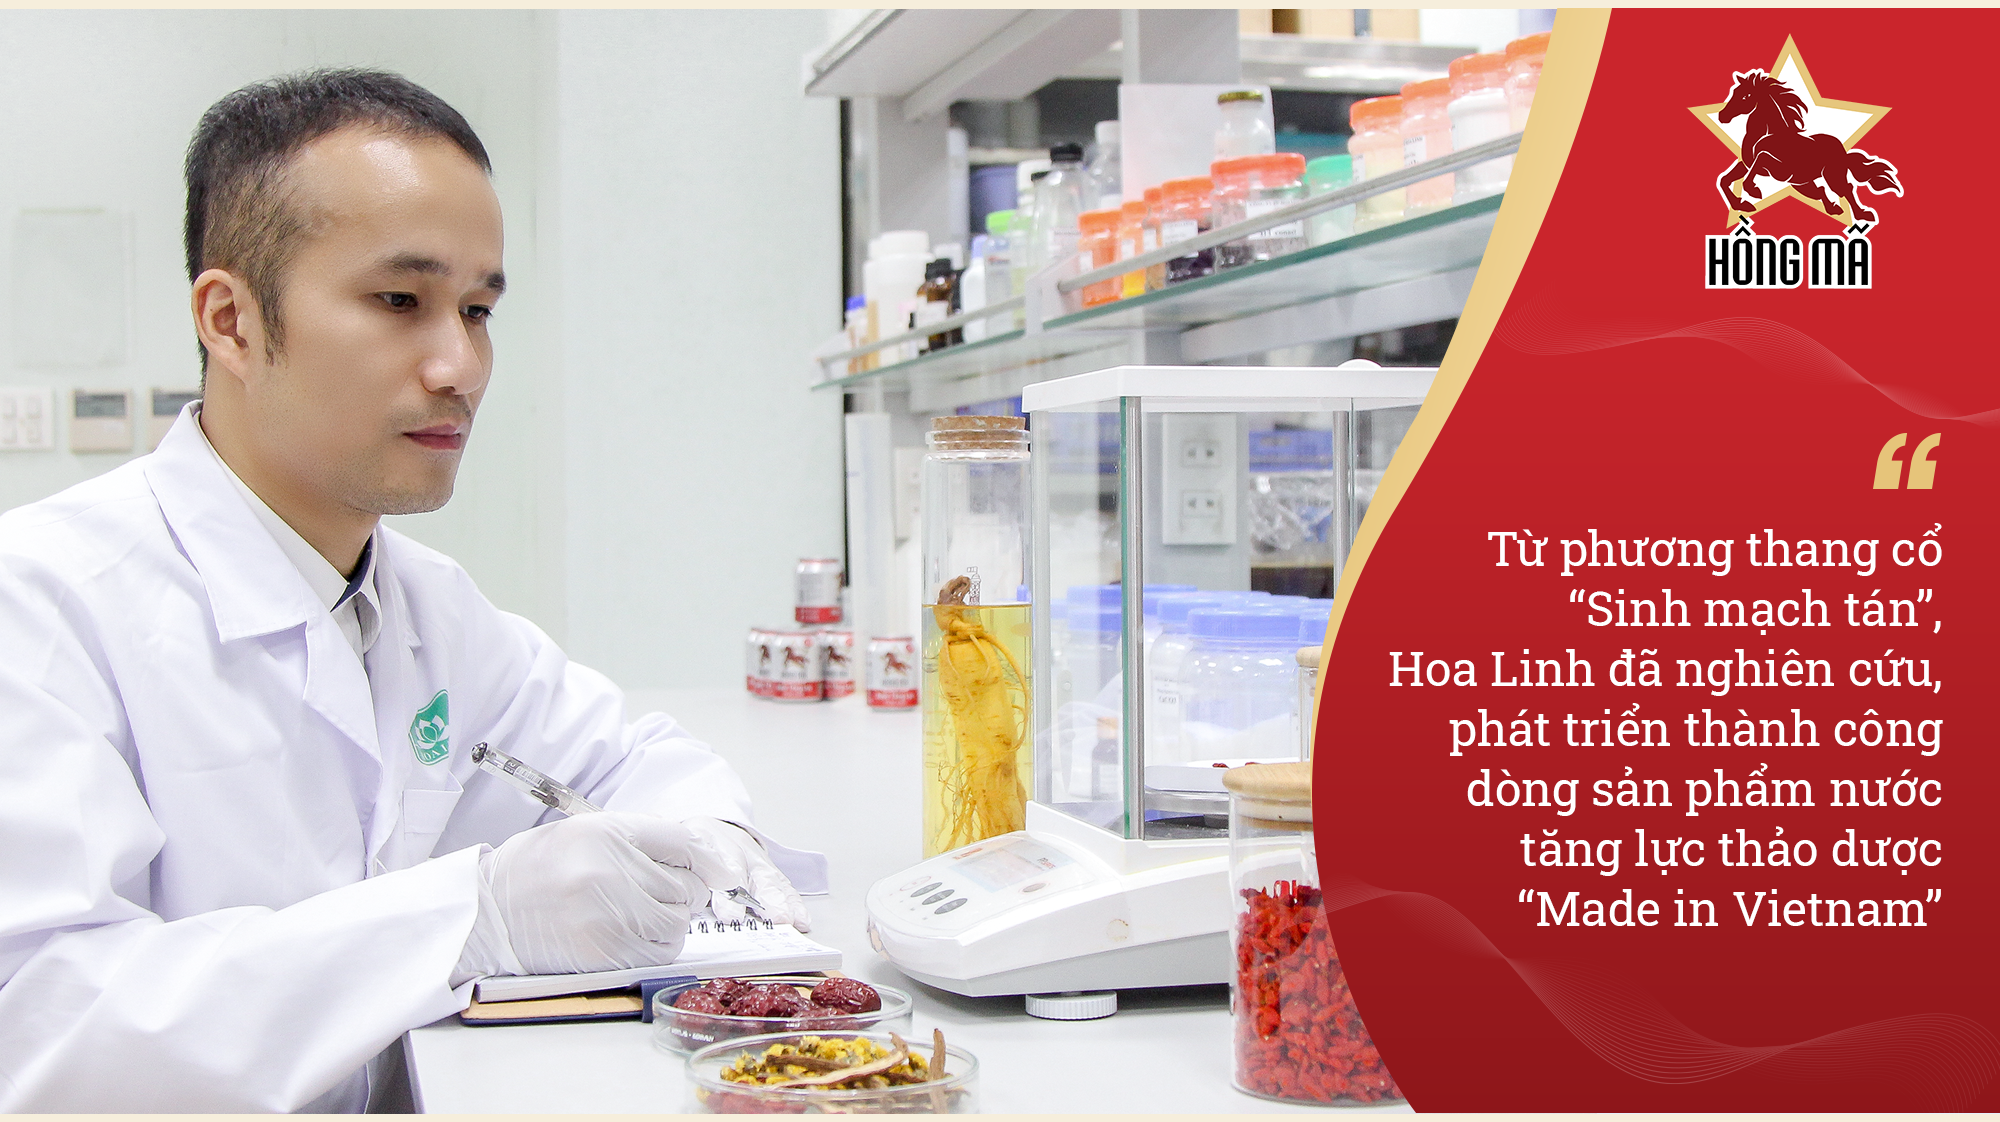 Dấu ấn trong hành trình hơn 20 năm Dược phẩm Hoa Linh chăm sóc sức khỏe người Việt - Ảnh 4.